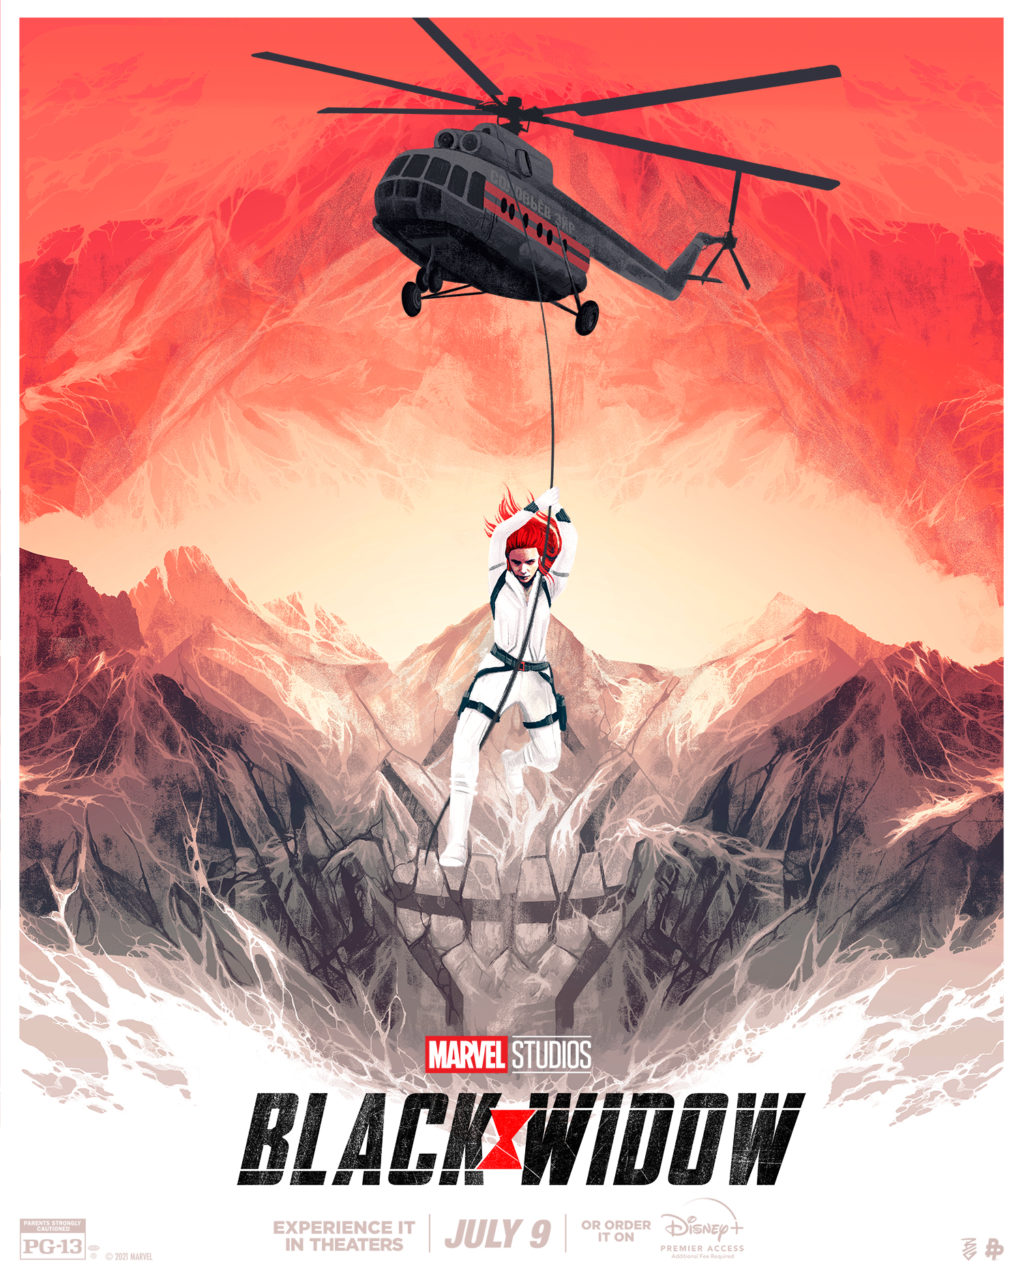 Black Widow poster (Marvel Studios)